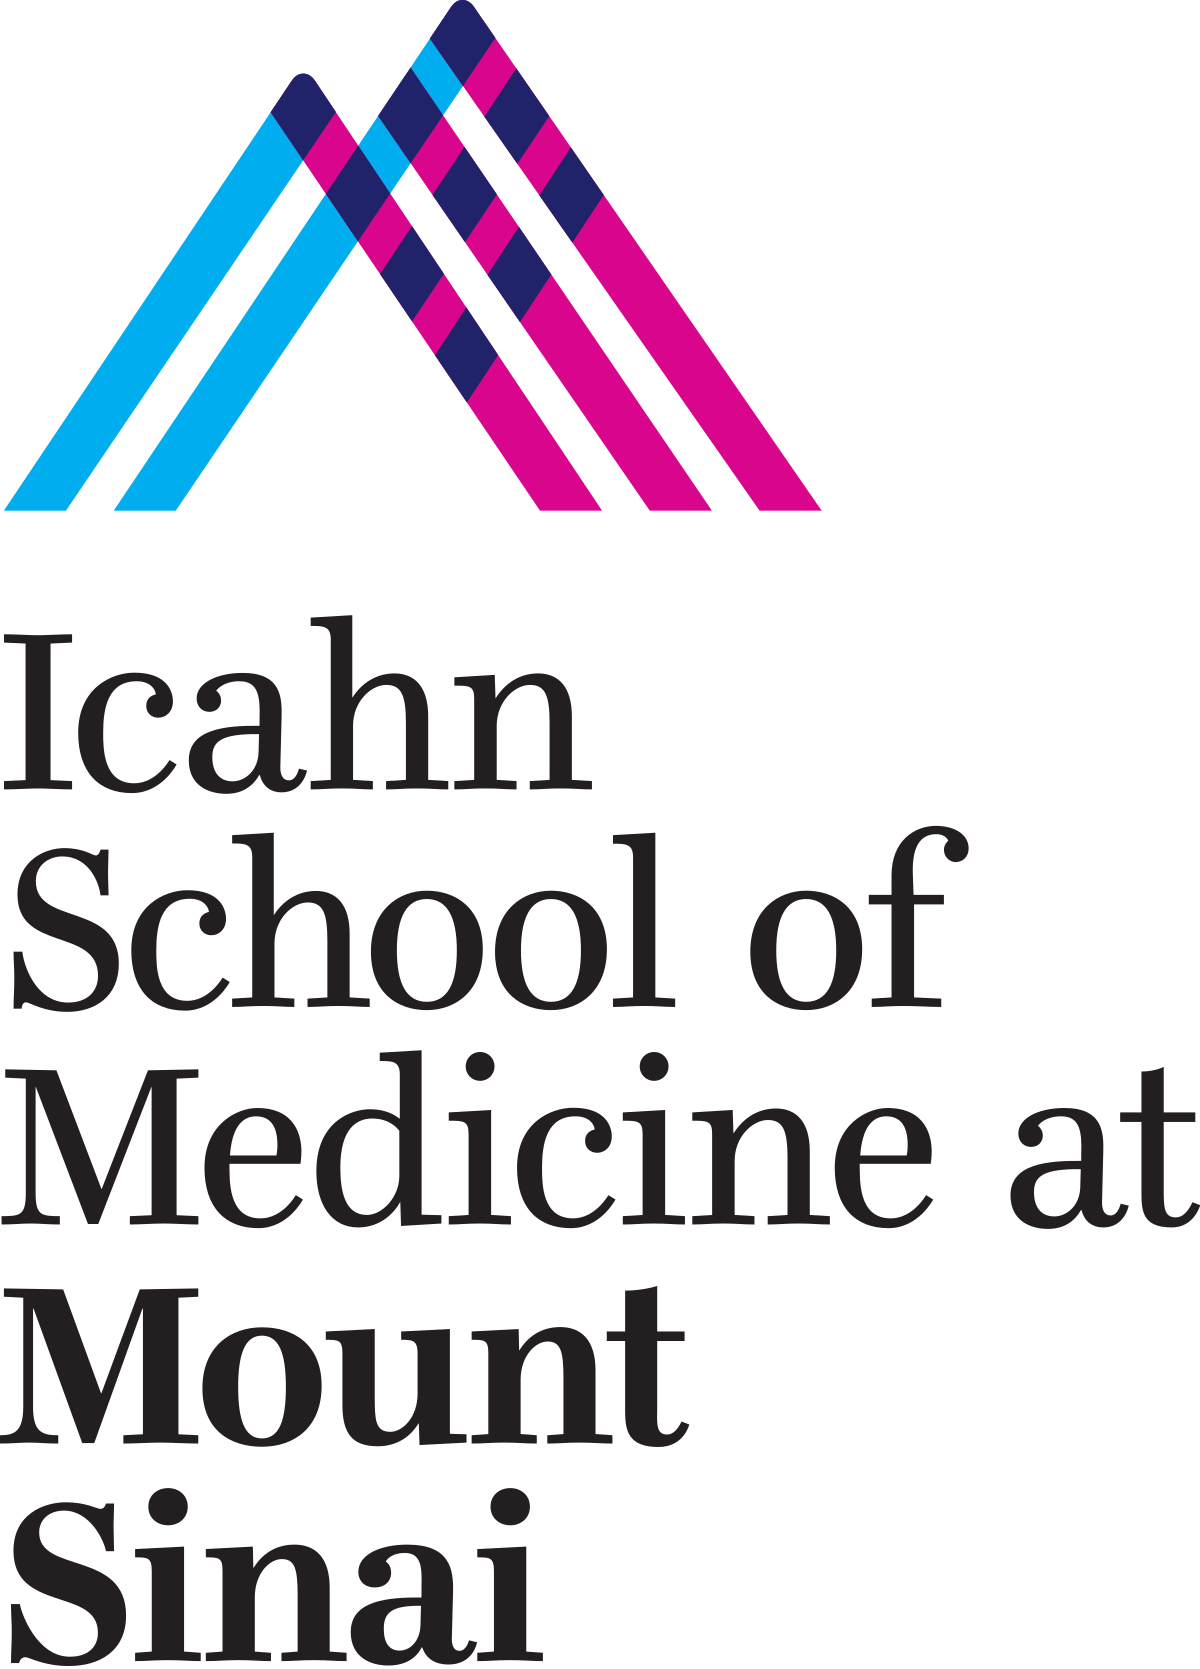 icahn school of medicine.png